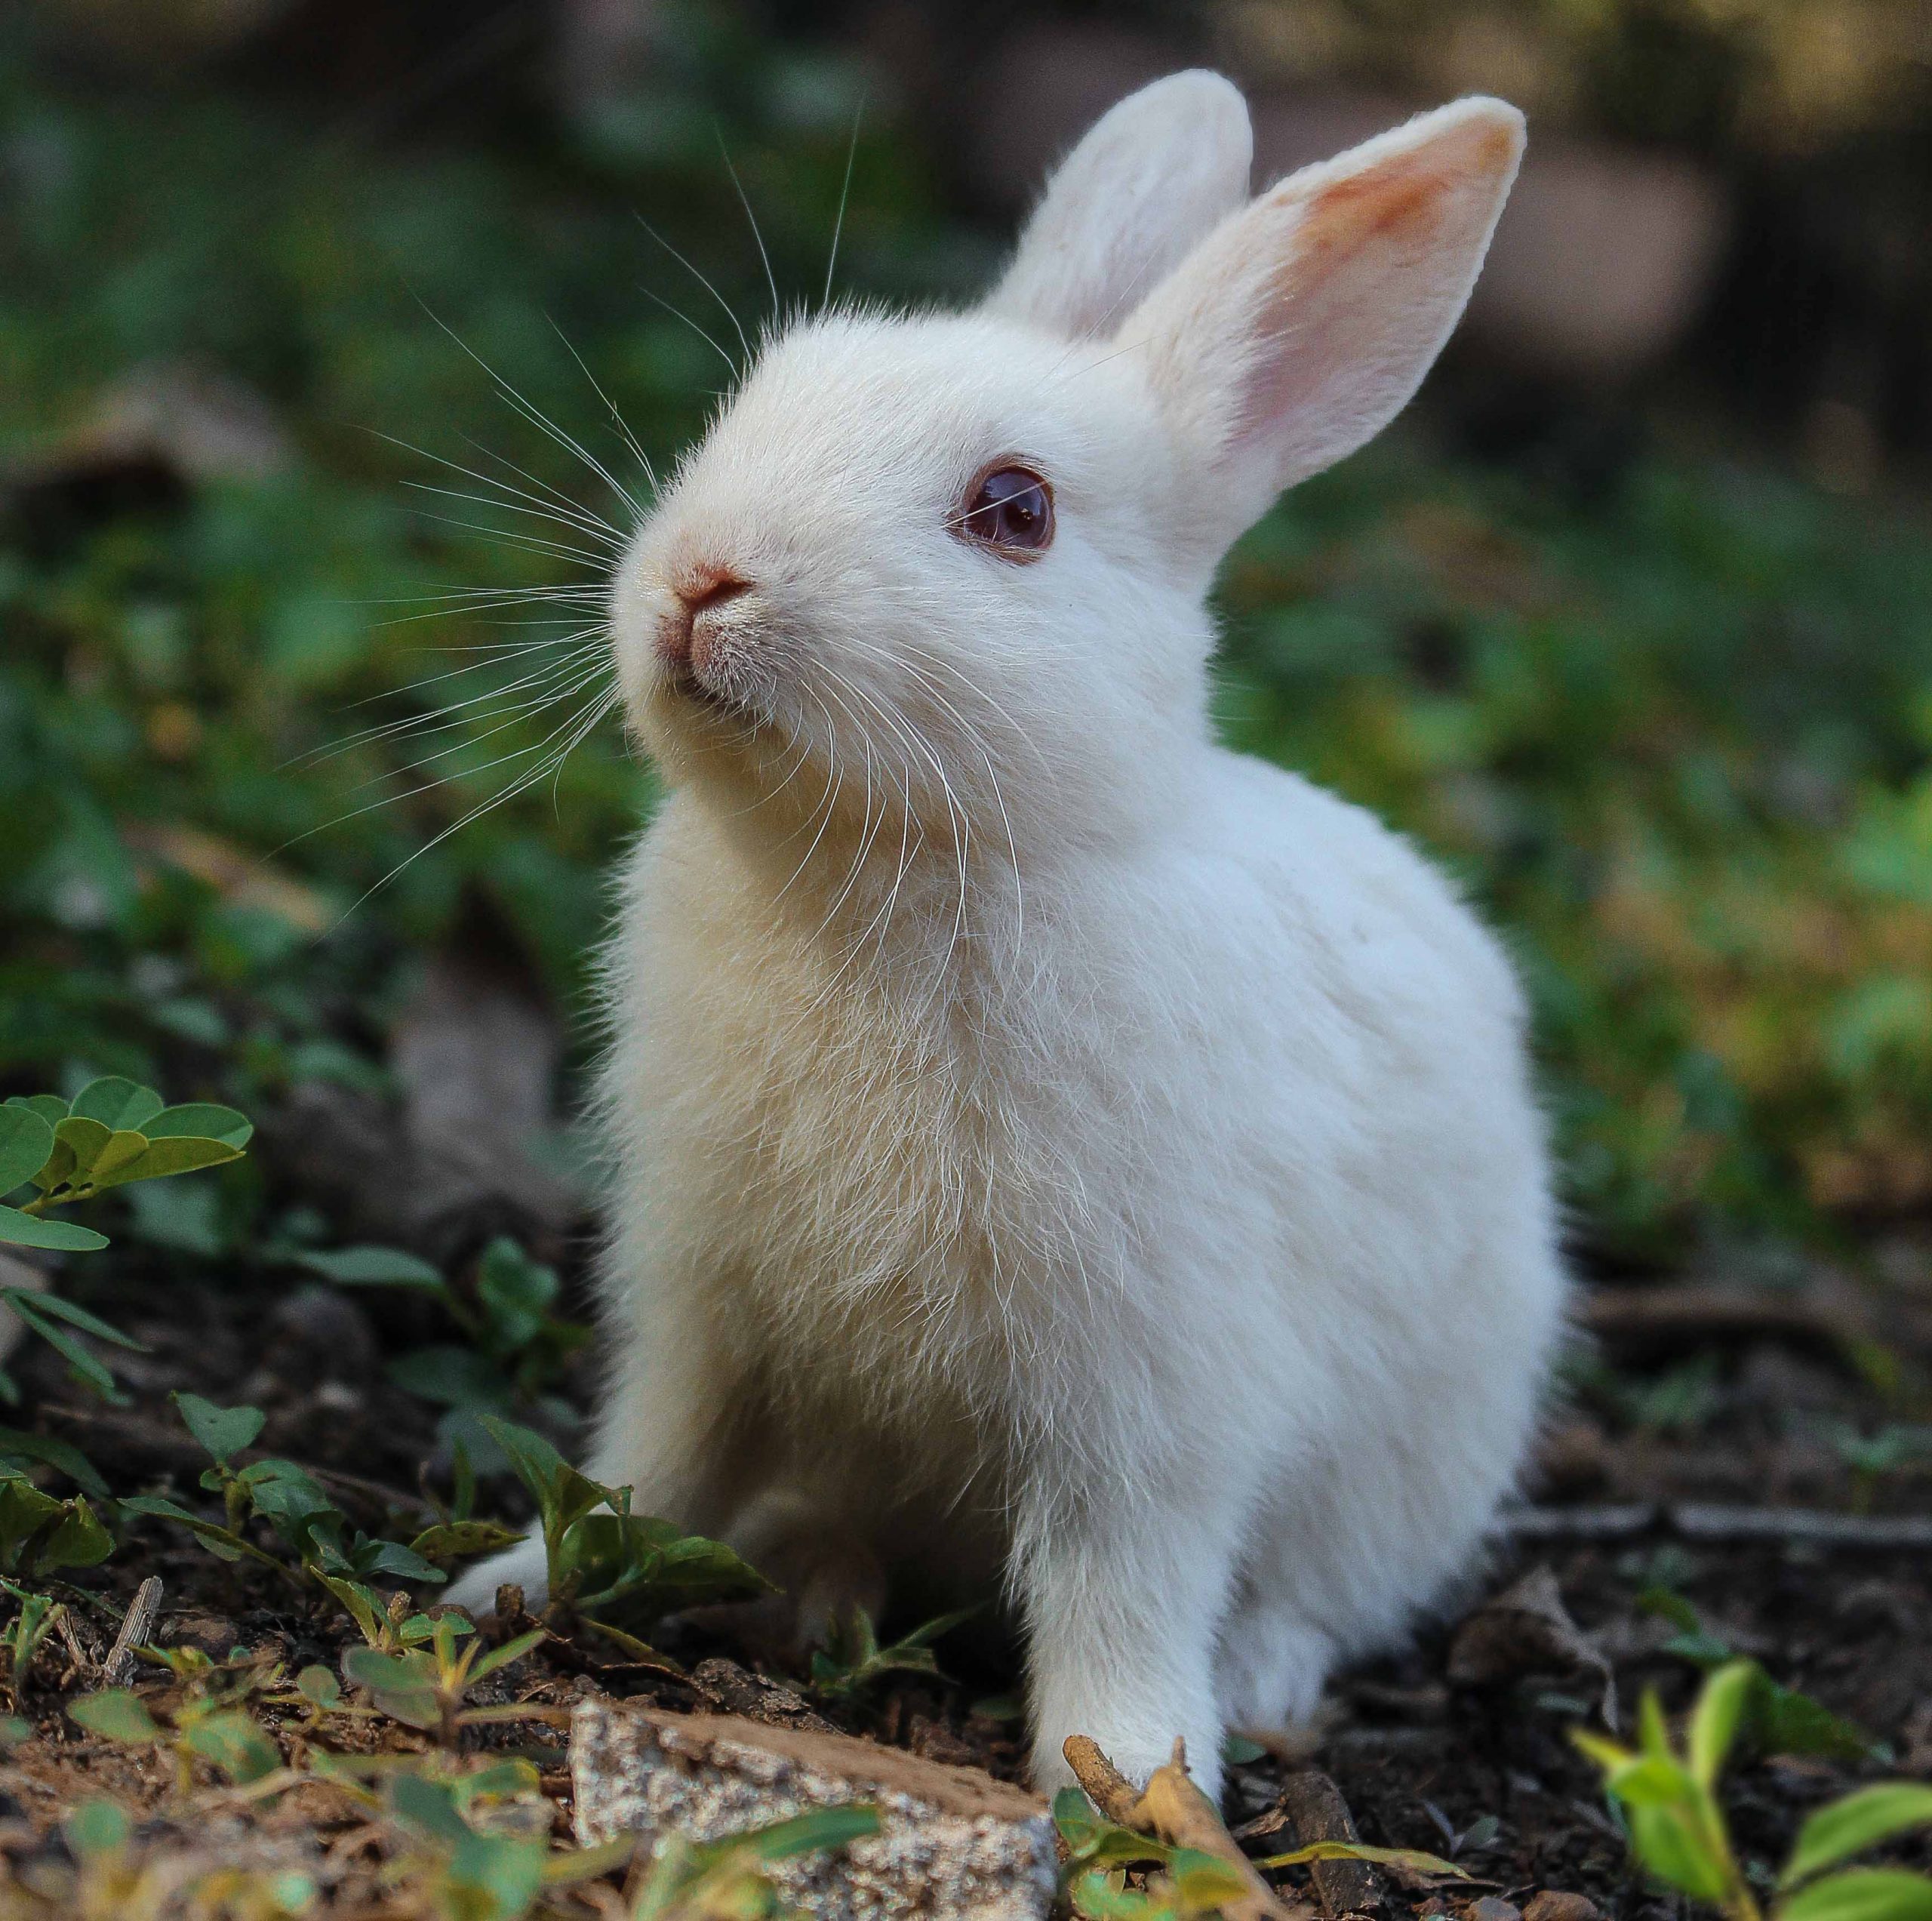 خرگوش دستگاه گوارش غیر معمولی دارد. میکروارگانیسم‌های متعددی در دستگاه گوارش خرگوش ساکن اند که با هم سبب هضم غذا می‌شوند.